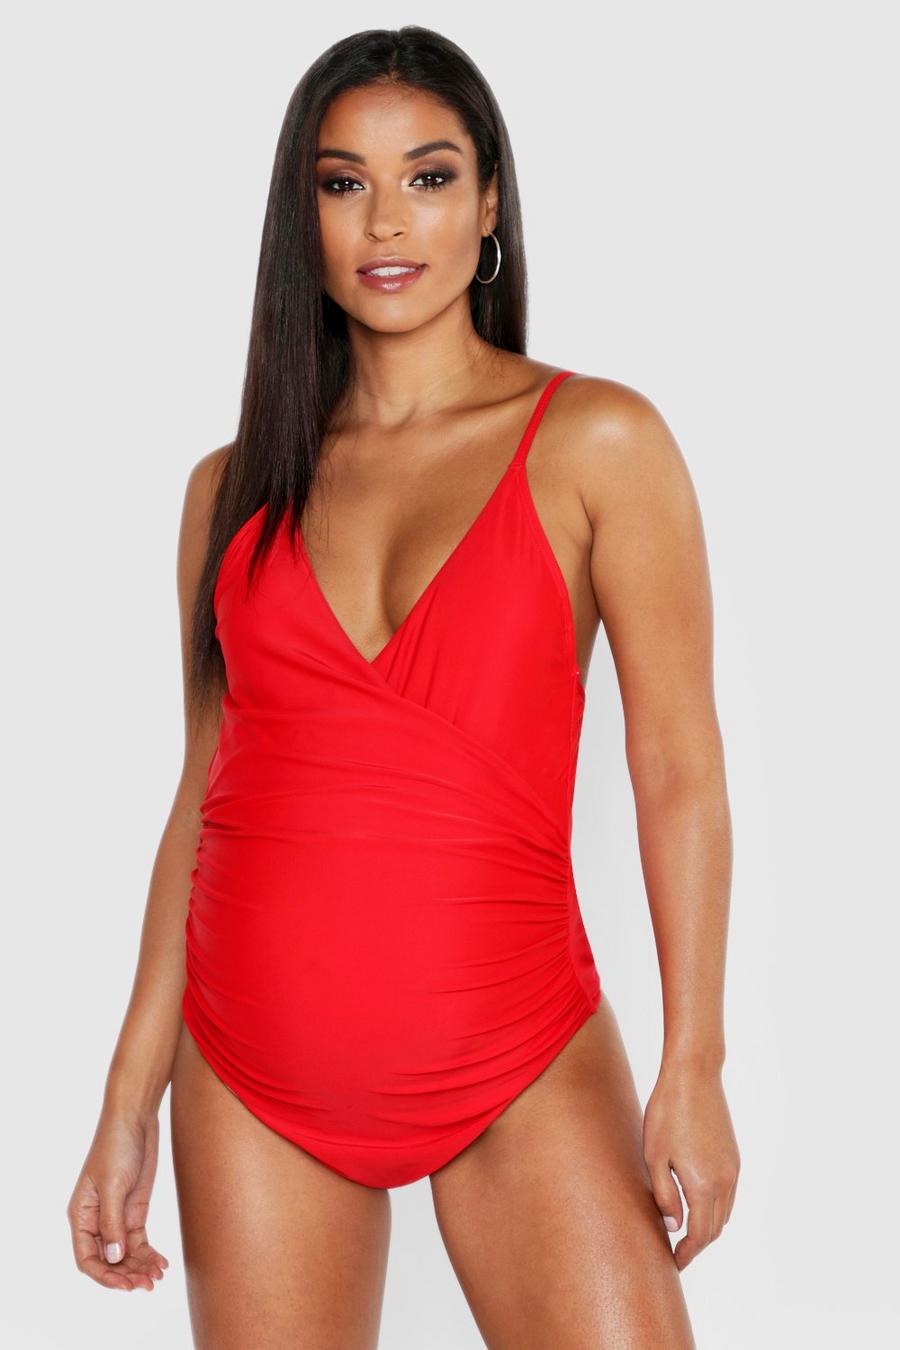 אדום rosso בגד ים מעטפת בטן עם כתפיות מתכווננות בגדי היריון